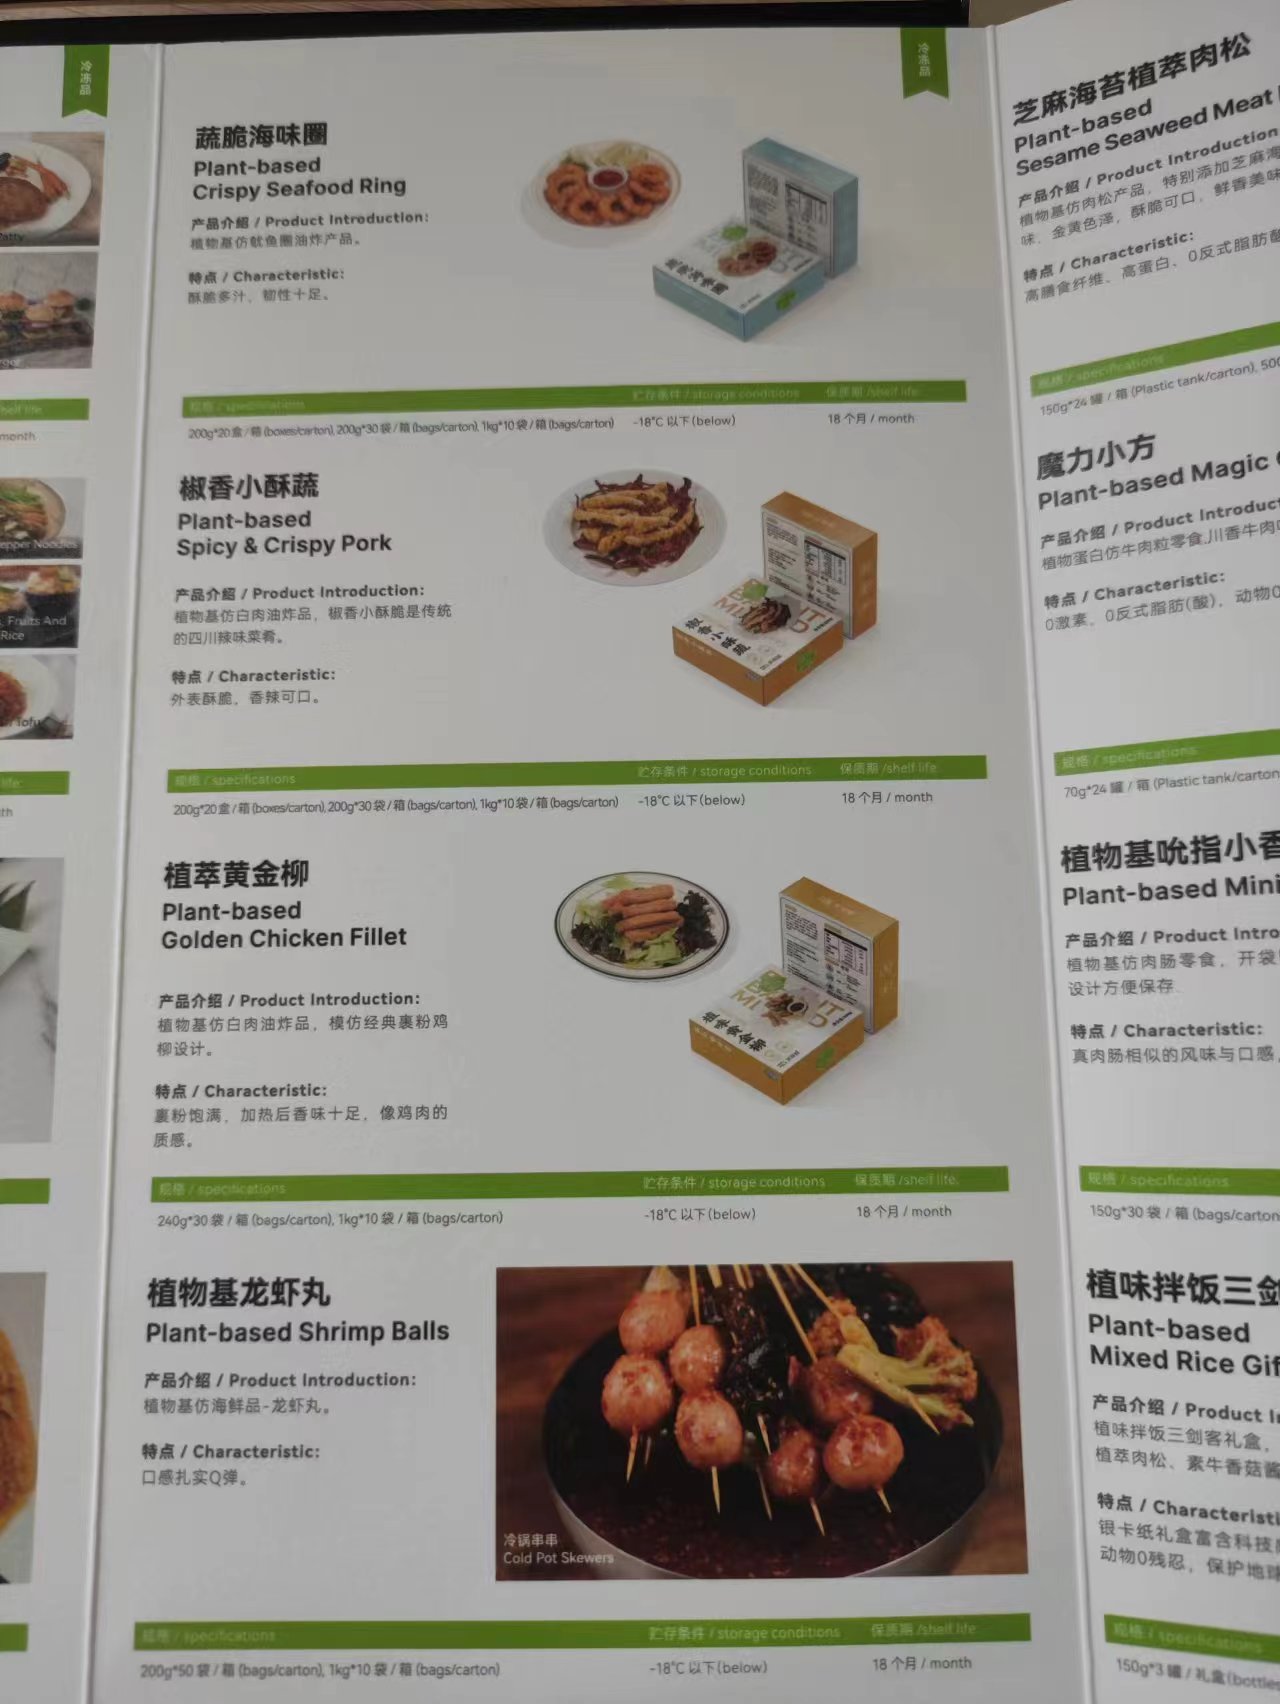 米特加食品（上海）有限公司提供植物蛋白食品（植物肉/素肉产品）招商服务